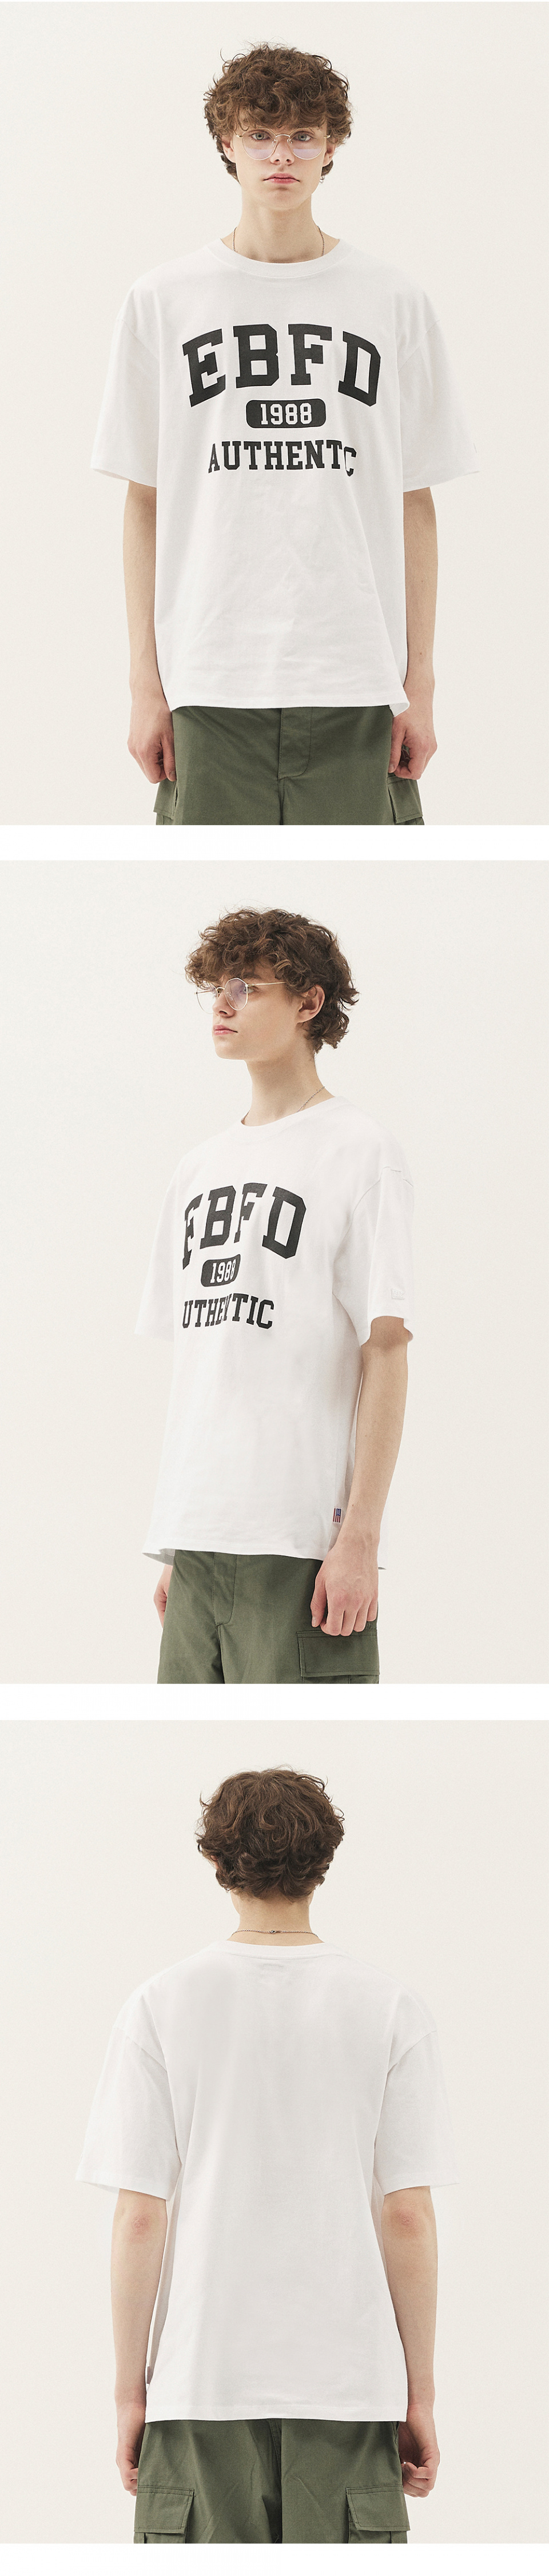 이벳필드(EBBETSFIELD) EBFD 어센틱 반팔 티셔츠  민트